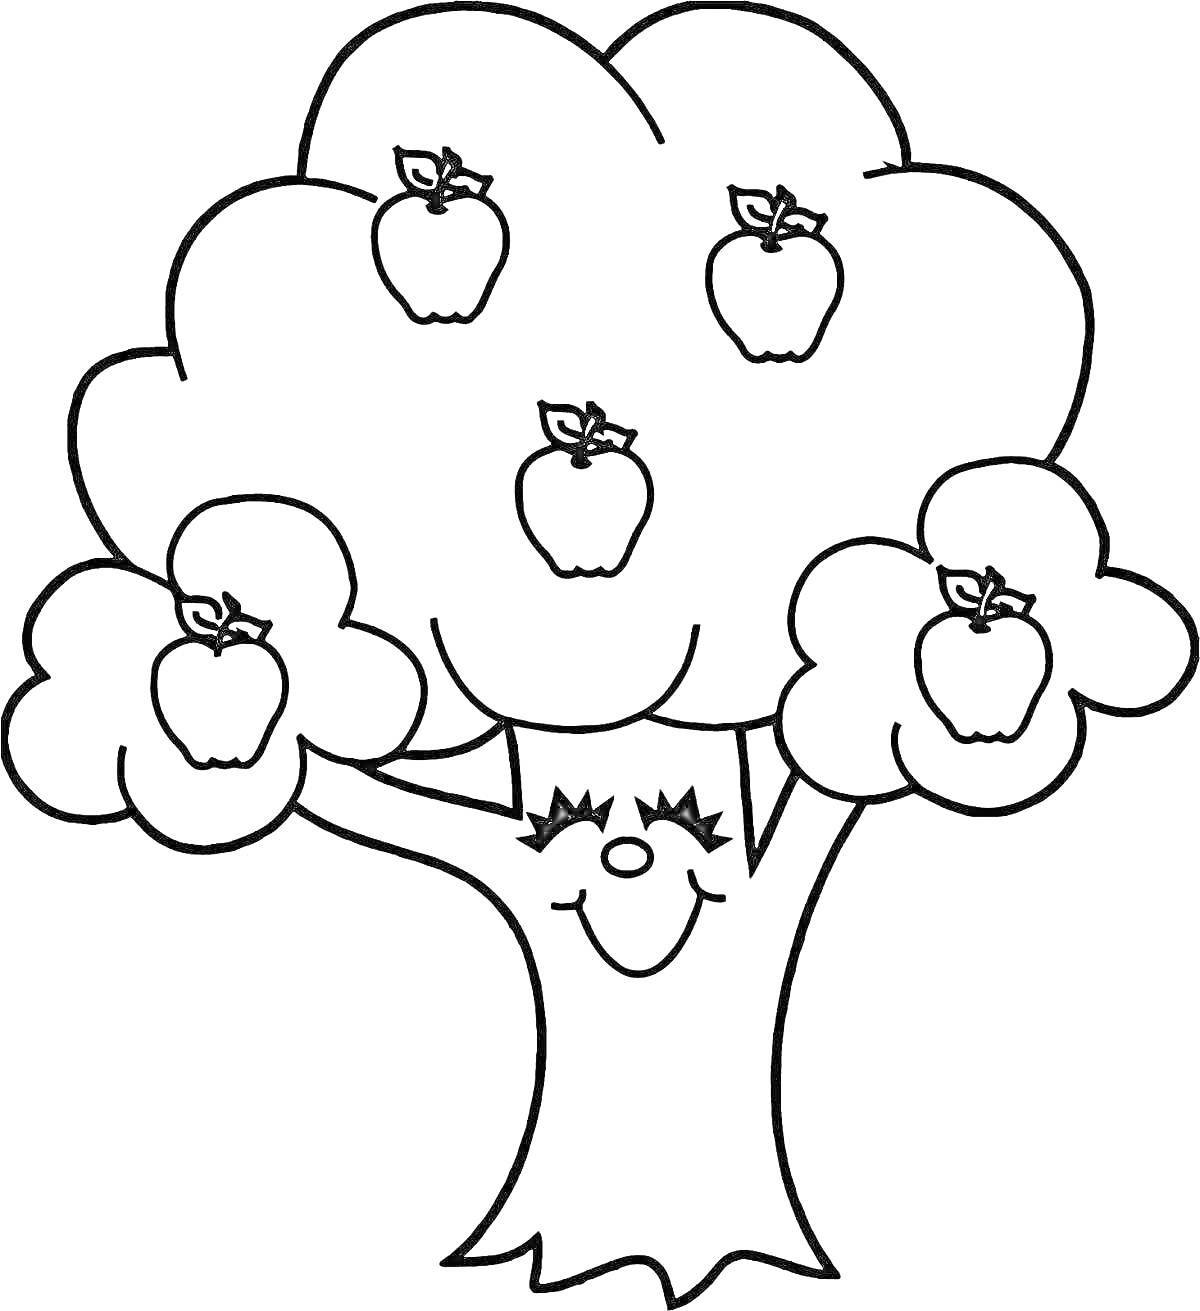 Раскраска Дерево с пятью яблоками и улыбающимся лицом на стволе